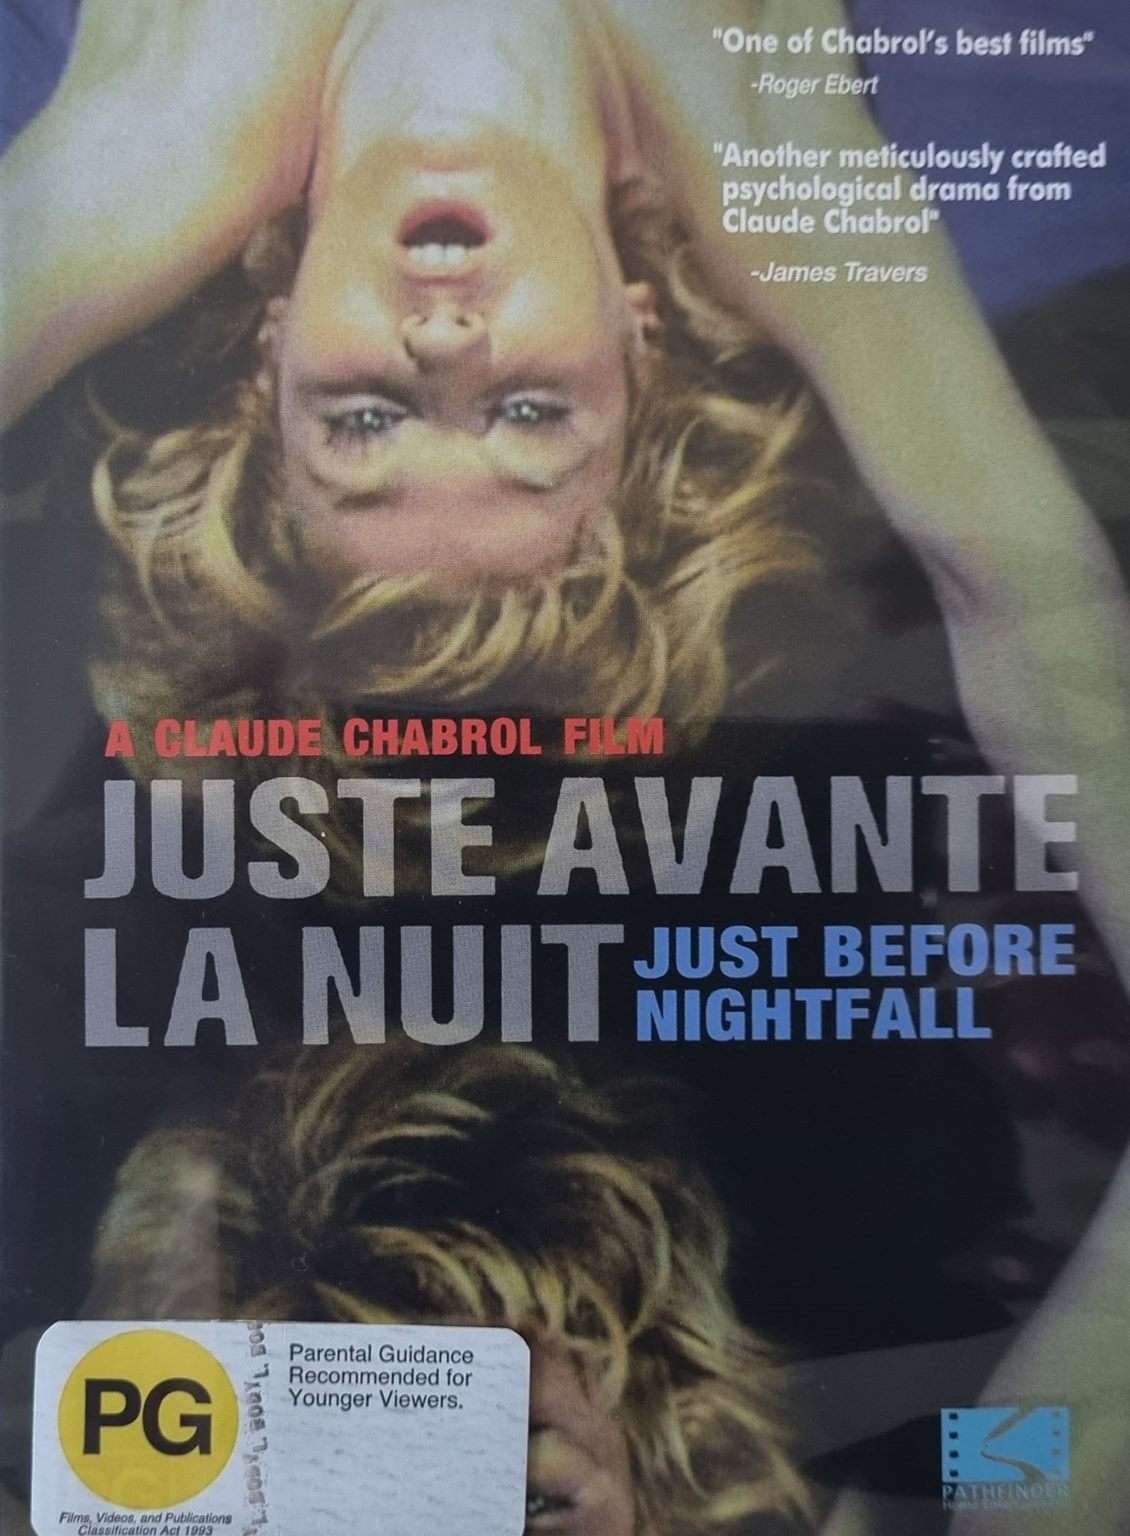 Juste Avant la Nuit - Just Before Nightfall